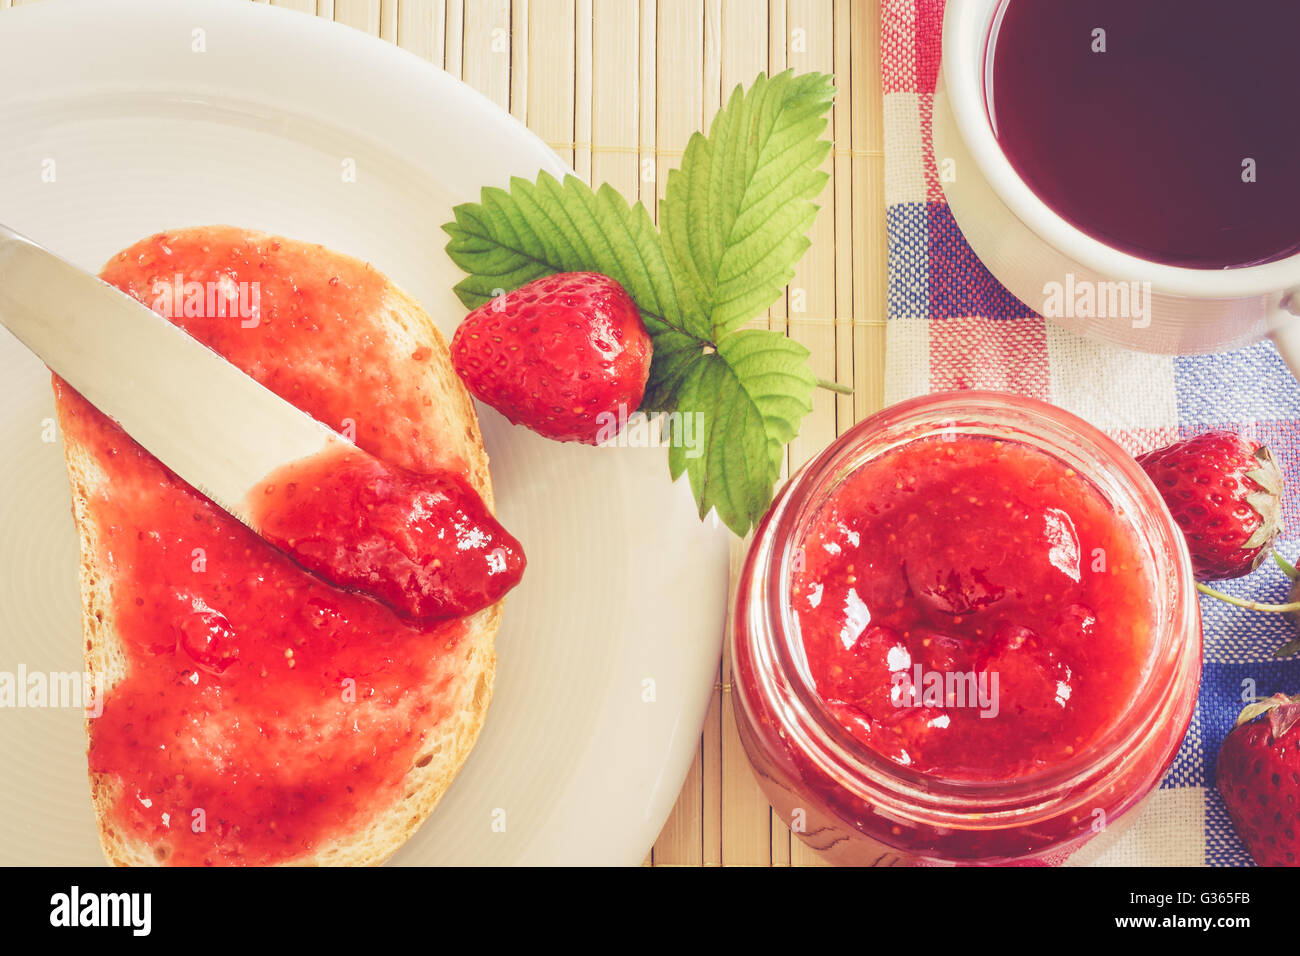 Scheibe Brot mit Glas Erdbeer Marmelade, Tee Teetasse, und frischen Erdbeeren und Blätter neben ihm. Ansicht von oben, Konzept-Bild Stockfoto